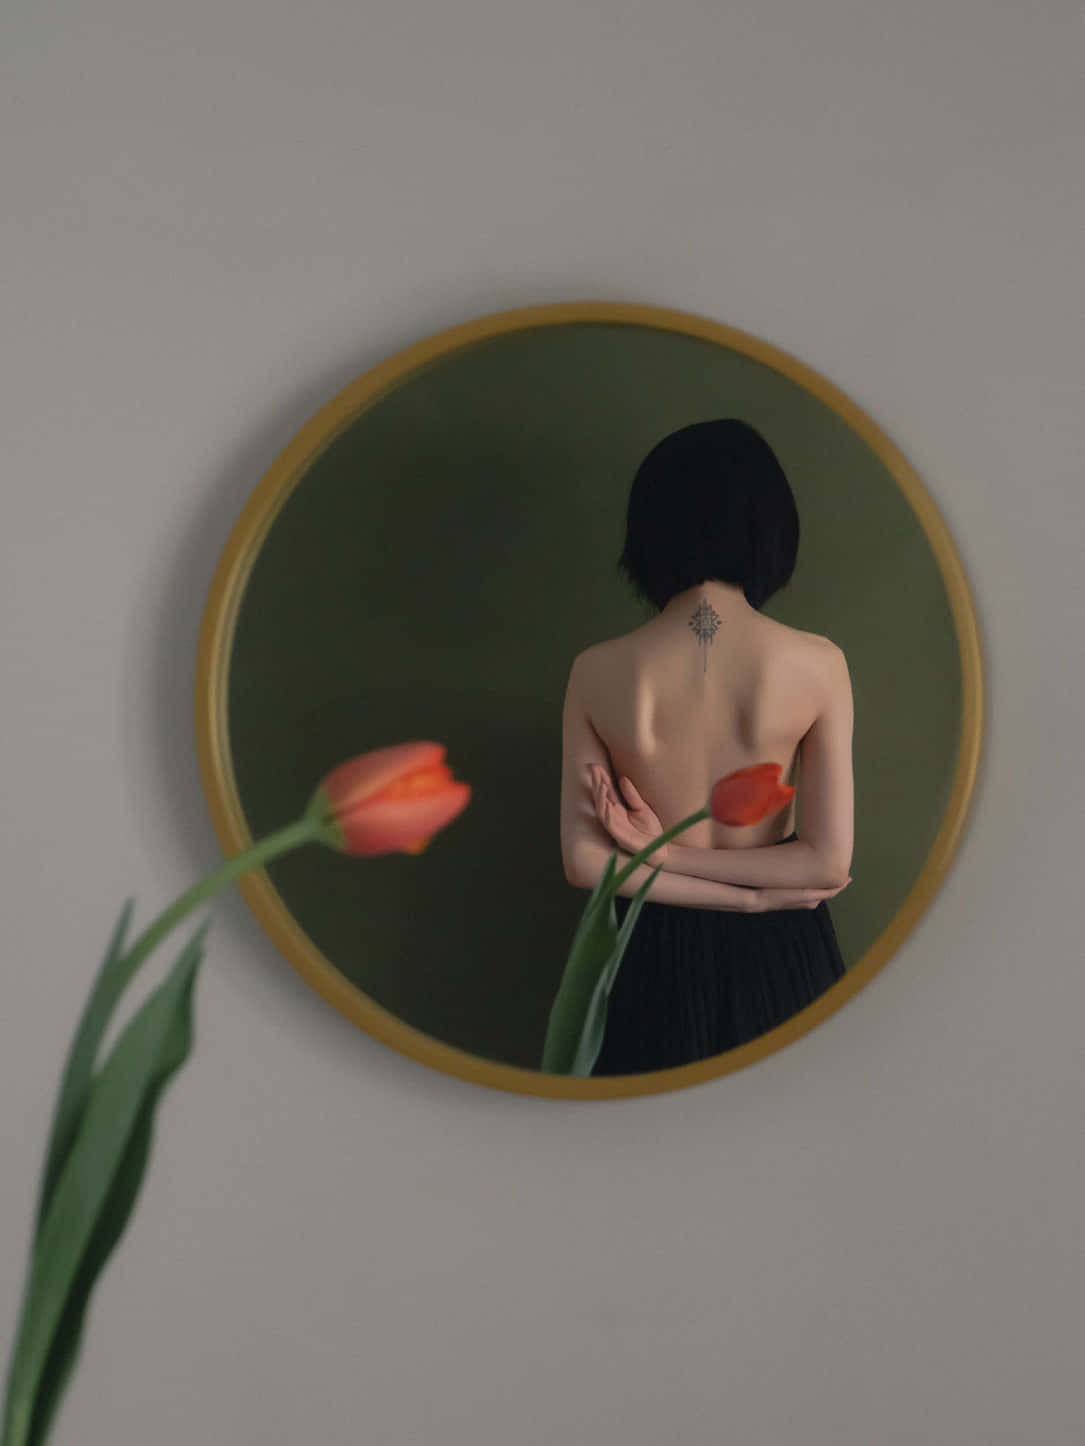 Imagendel Reflejo En El Espejo De La Espalda De Una Mujer